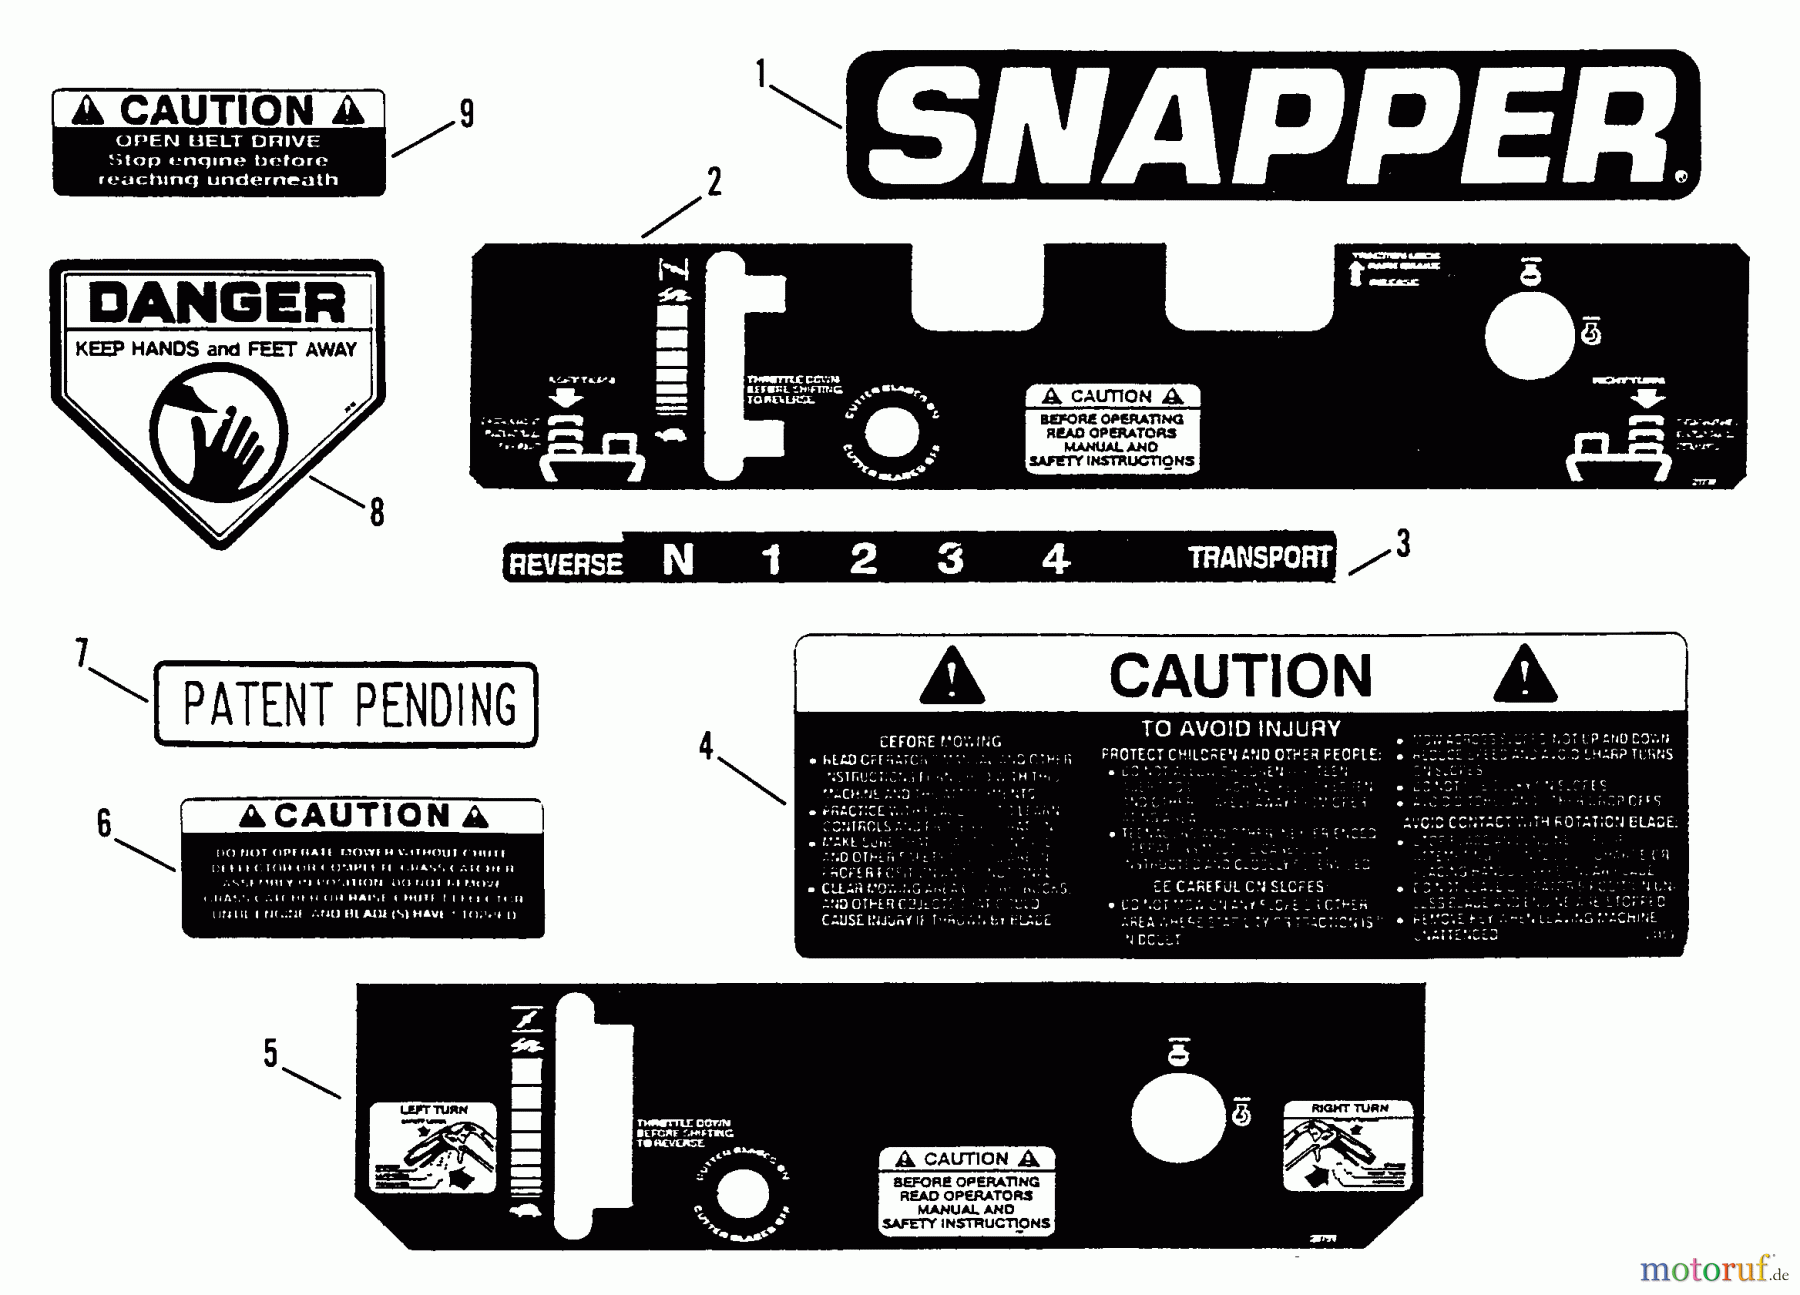  Snapper Mähdecks PMA7484 - Snapper 48